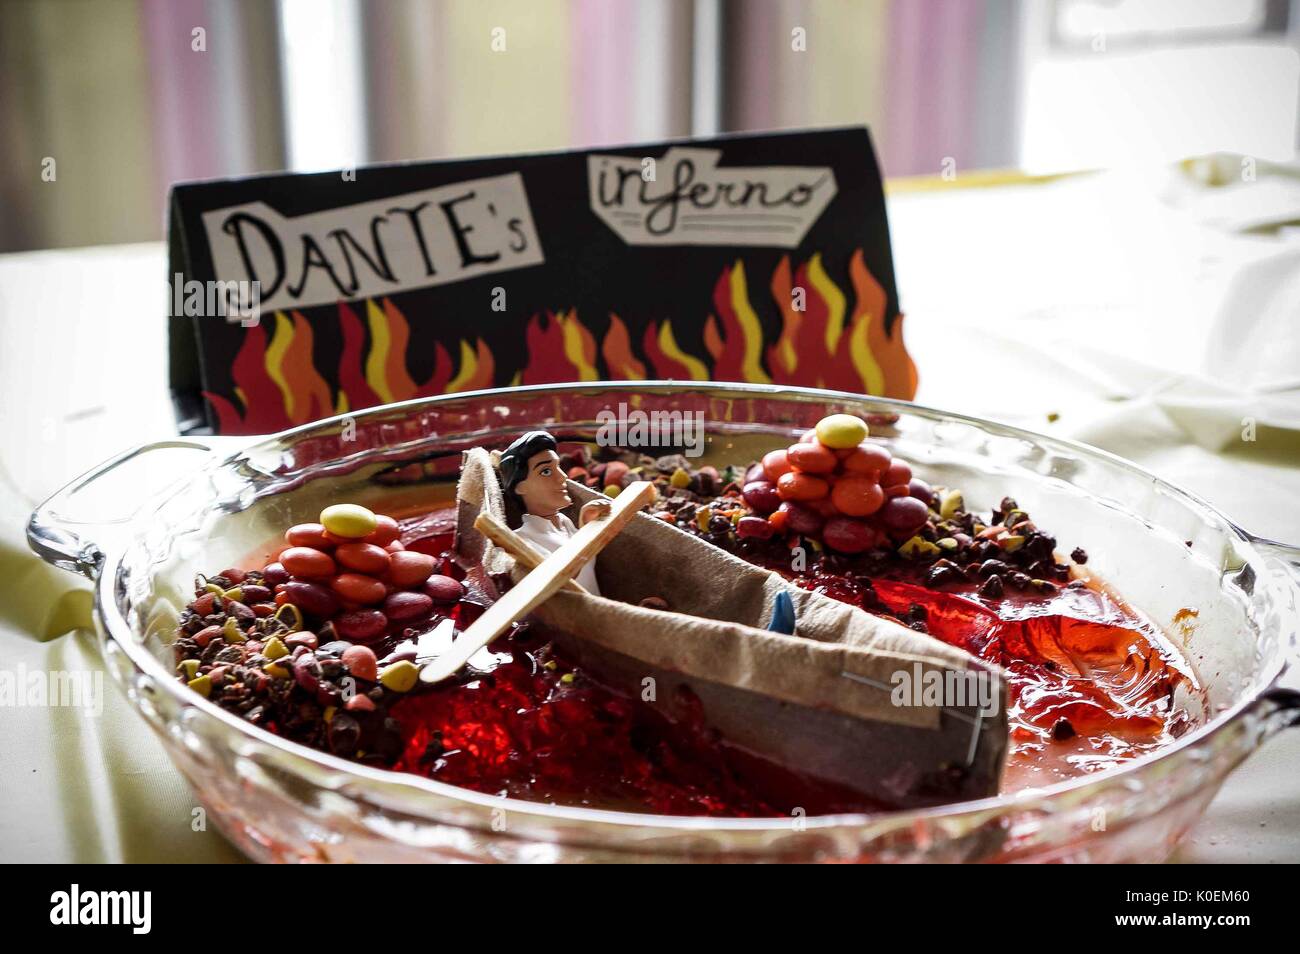 Un dessert Dante's Inferno parzialmente mangiato al Festival del Libro commestibile 2014, un concorso di torte letterarie per gli studenti del campus Homewood della Johns Hopkins University di Baltimora, Maryland, 2014. Cortesia Eric Chen. Foto Stock